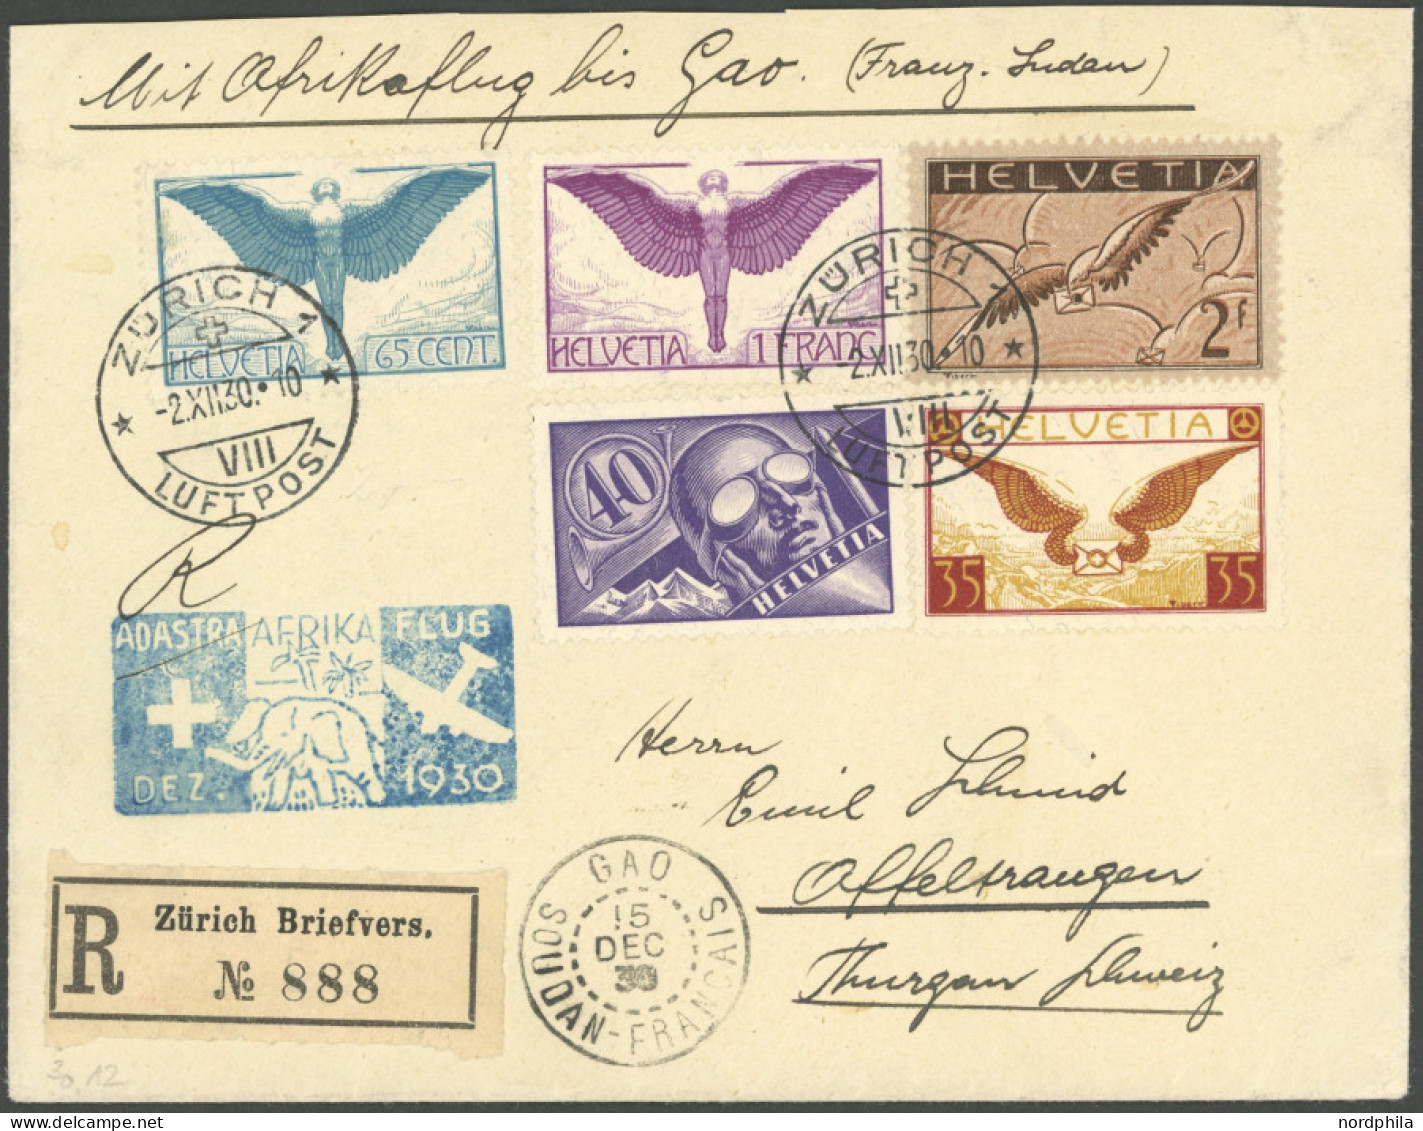 LUFTPOST SF 30.12e BRIEF, 2.12.1930, 3. SCHWEIZER AFRIKAFLUG, Zürich-GAO, Einschreibbrief Mit Guter Frankatur, U.a. Mi.N - First Flight Covers